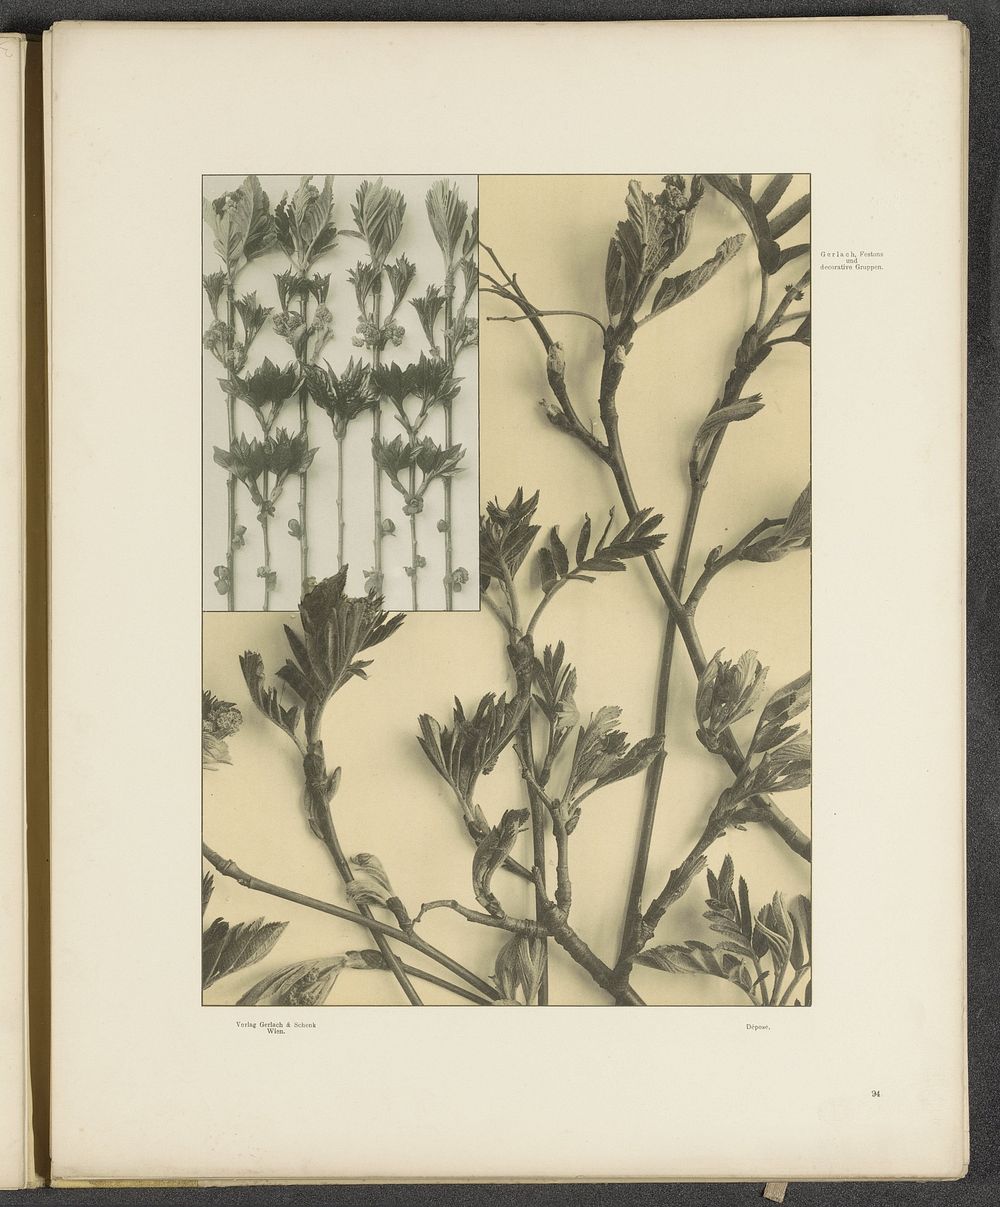 Vlakken met scheuten van de wilde lijsterbes (c. 1887 - in or before 1897) by anonymous and Gerlach and Schenk